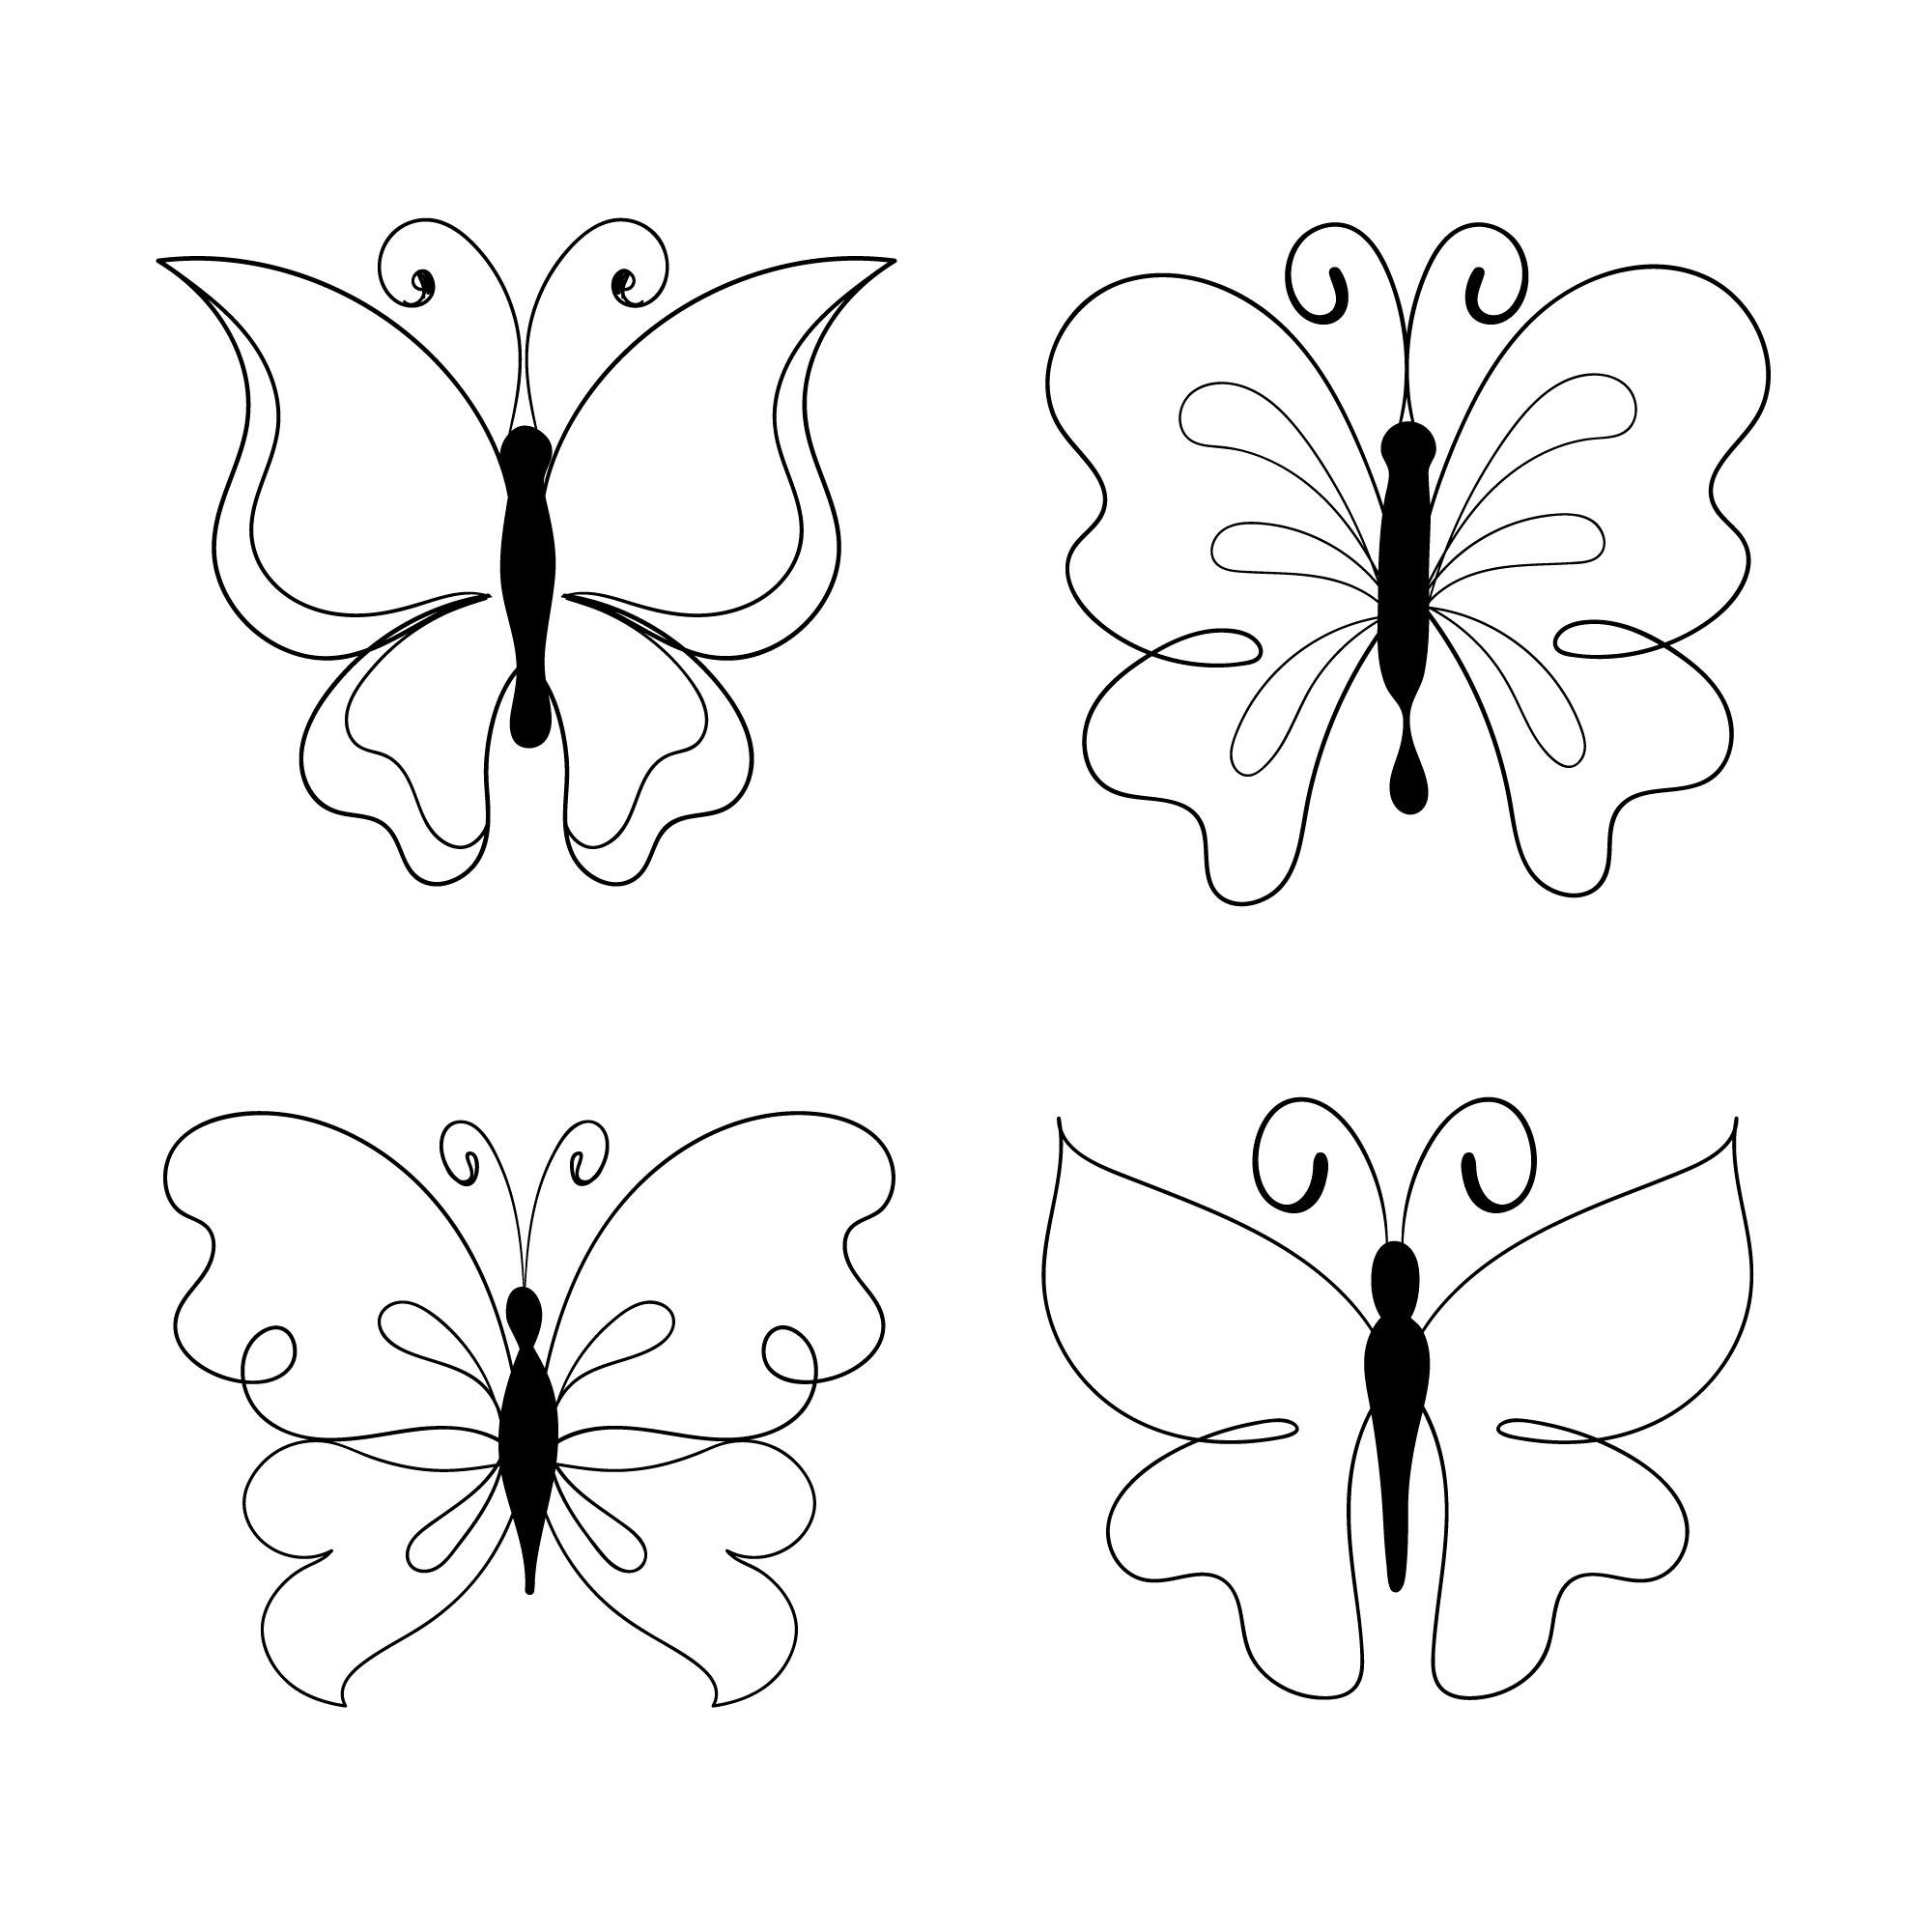 Раскраска для детей: набор из бабочек контур